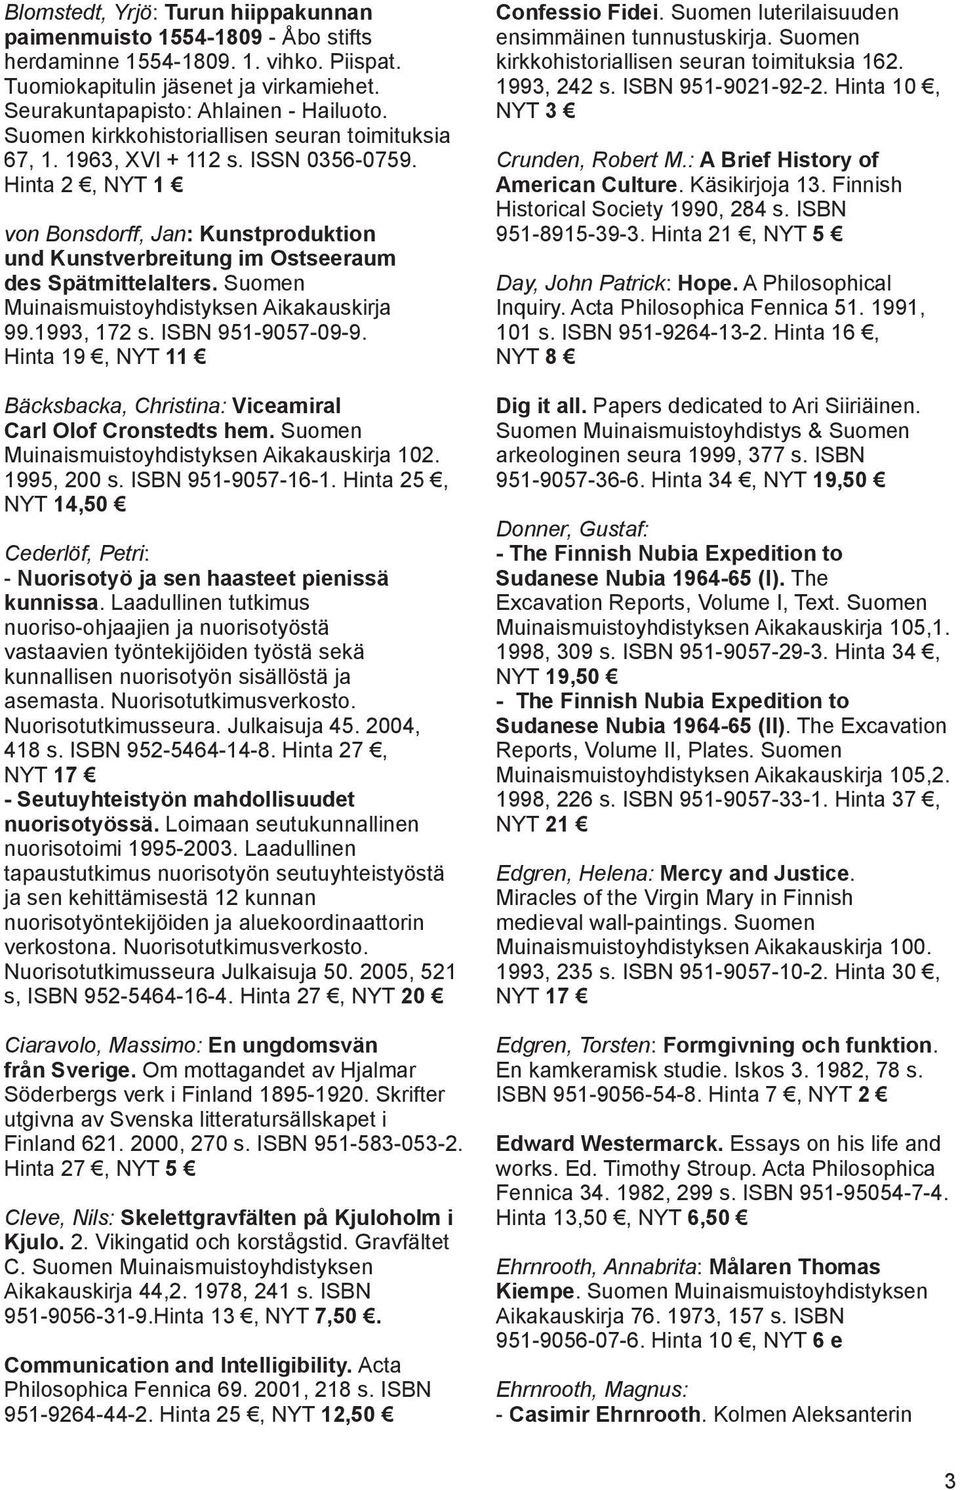 Suomen Muinaismuistoyhdistyksen Aikakauskirja 99.1993, 172 s. ISBN 951-9057-09-9. Hinta 19, NYT 11 Bäcksbacka, Christina: Viceamiral Carl Olof Cronstedts hem.